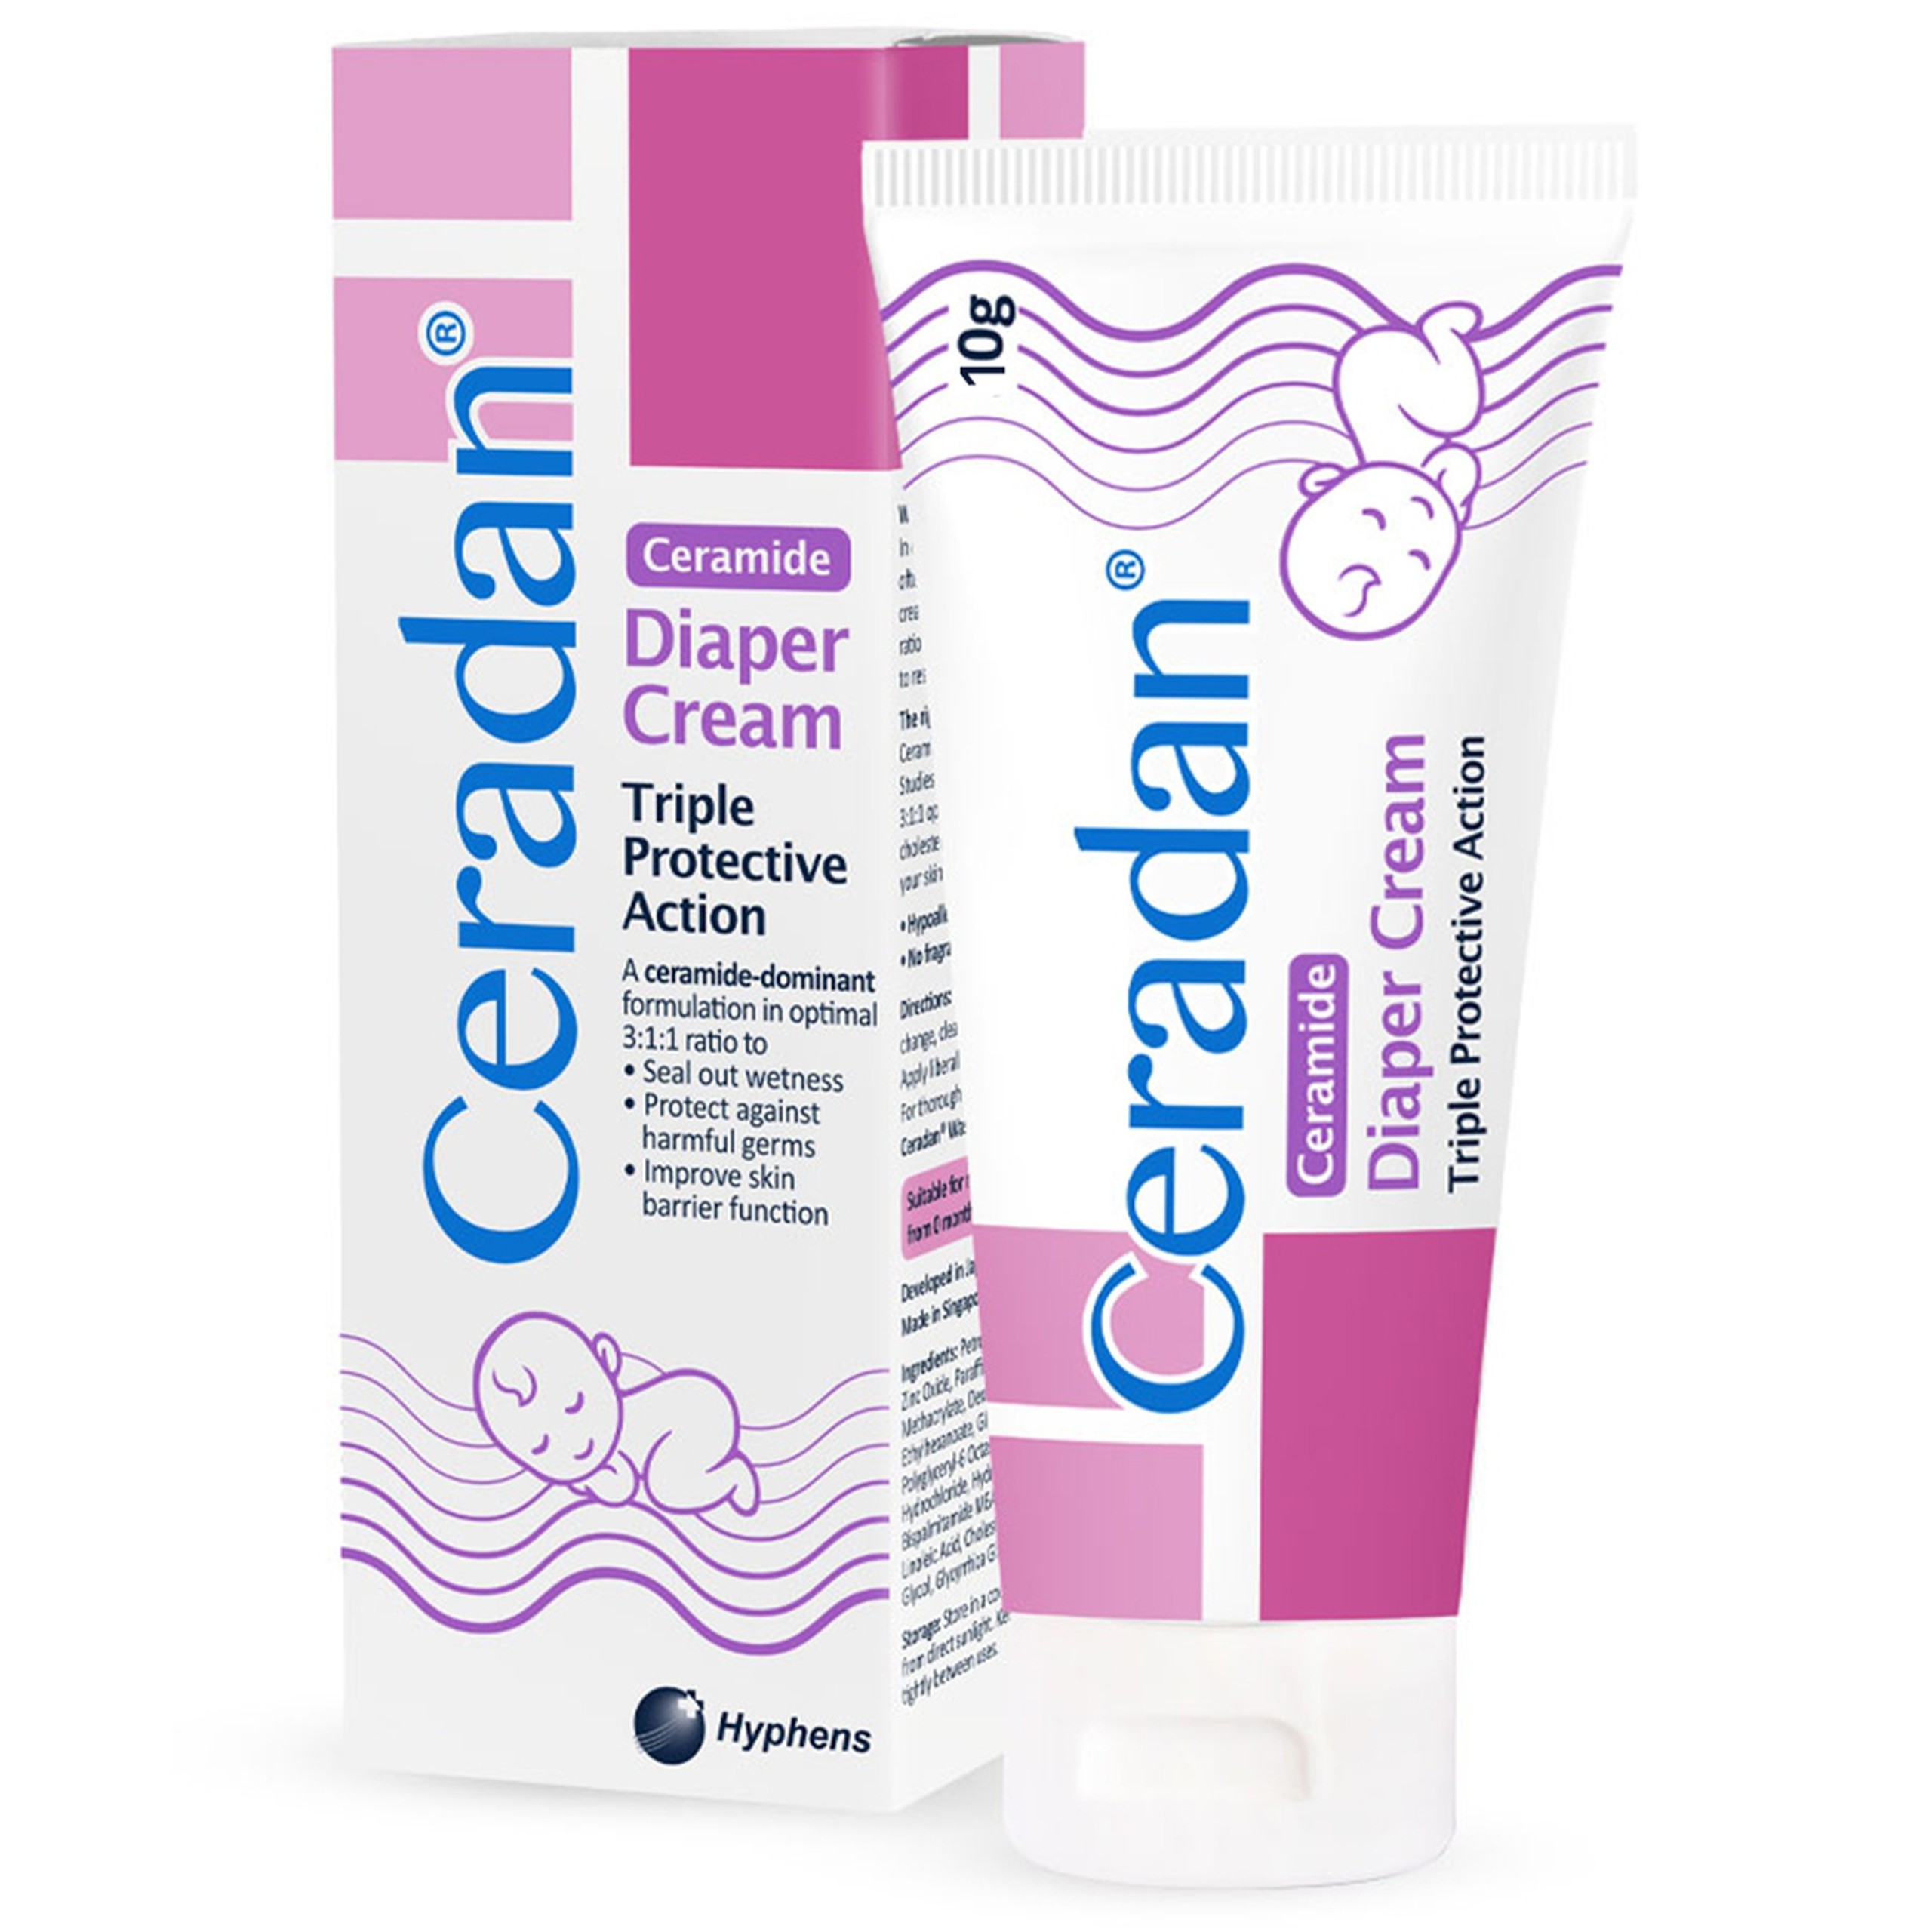 Kem Ceradan Ceramide Diaper Cream hỗ trợ làm dịu da, chống hăm tã cho bé (10g)